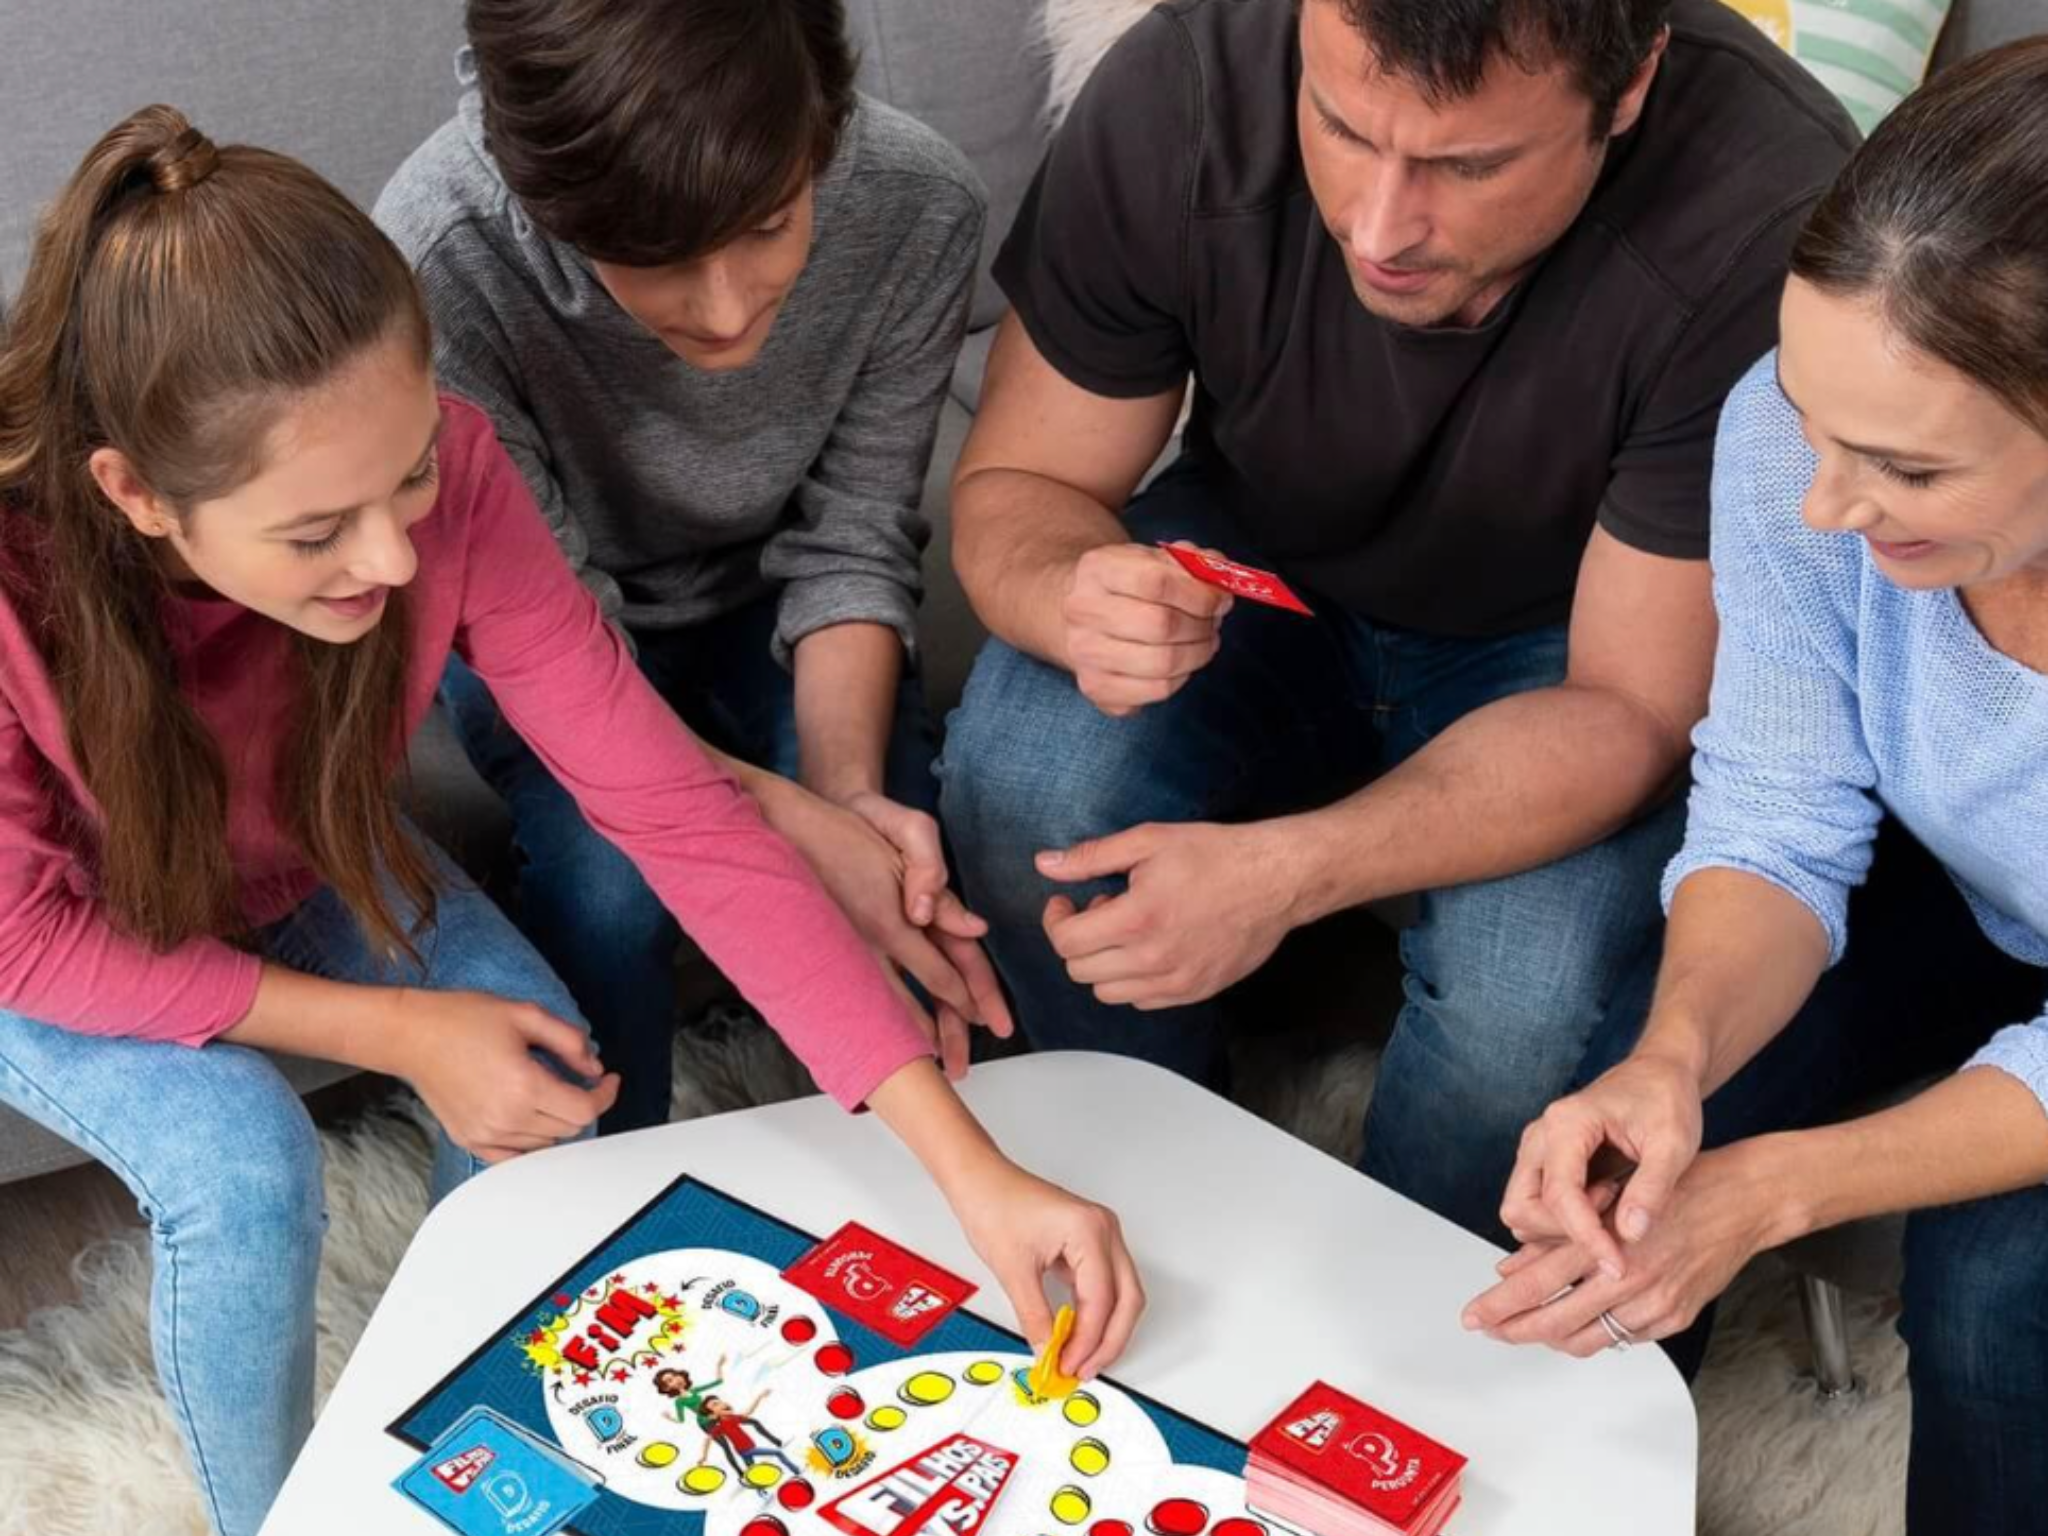 24 jogos de tabuleiro para desafiar a família e os amigos